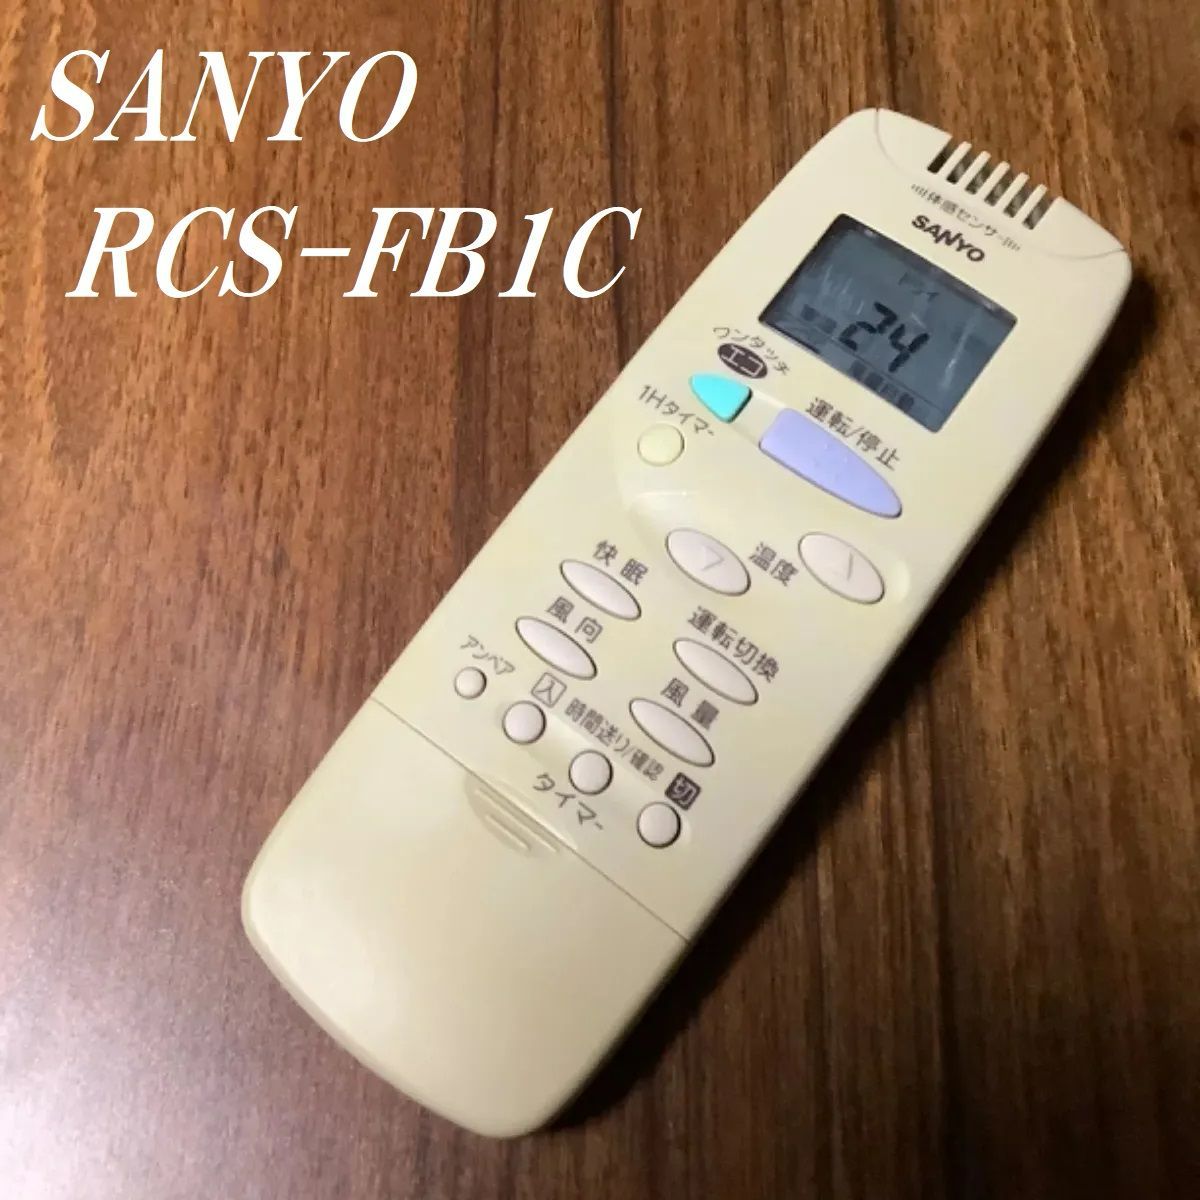 サンヨー エアコン リモコン RCS-FB1C - エアコン